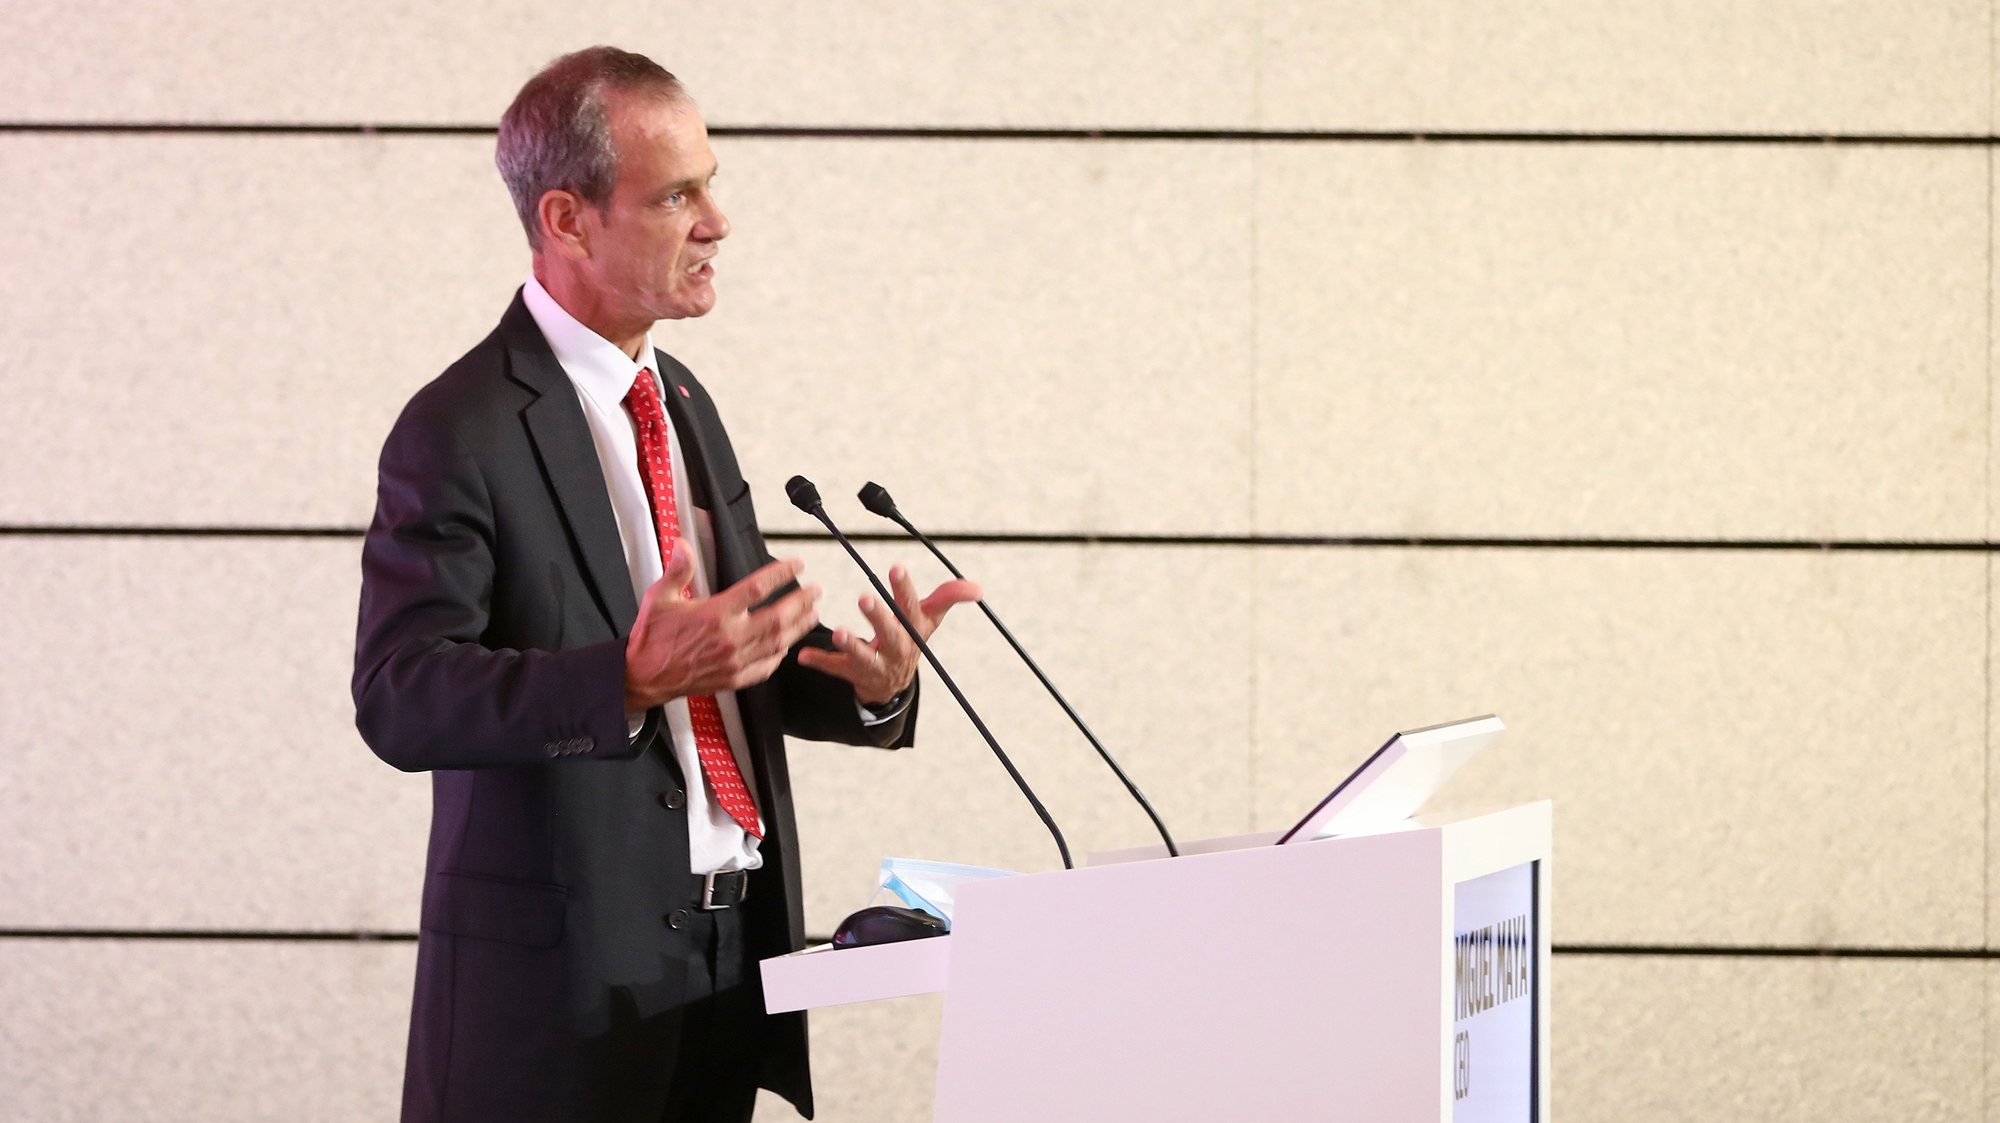 O presidente do Millennium bcp, Miguel Maya, intervém durante a apresentação dos resultados do banco no 3.º semestre de 2020, em Oeiras, 29 de outubro de 2020. ANTÓNIO PEDRO SANTOS/LUSA